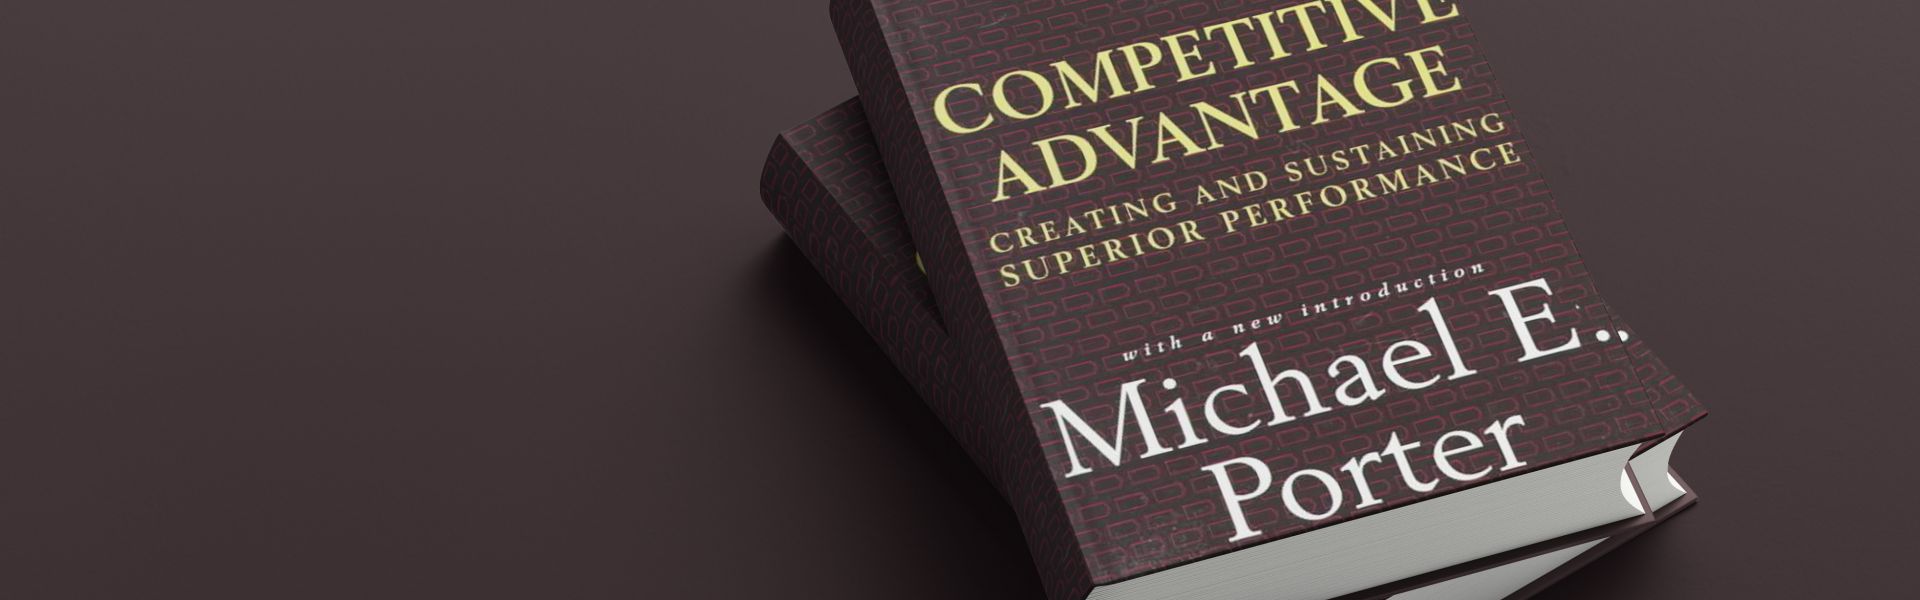 Competitive advantage (samenvatting)